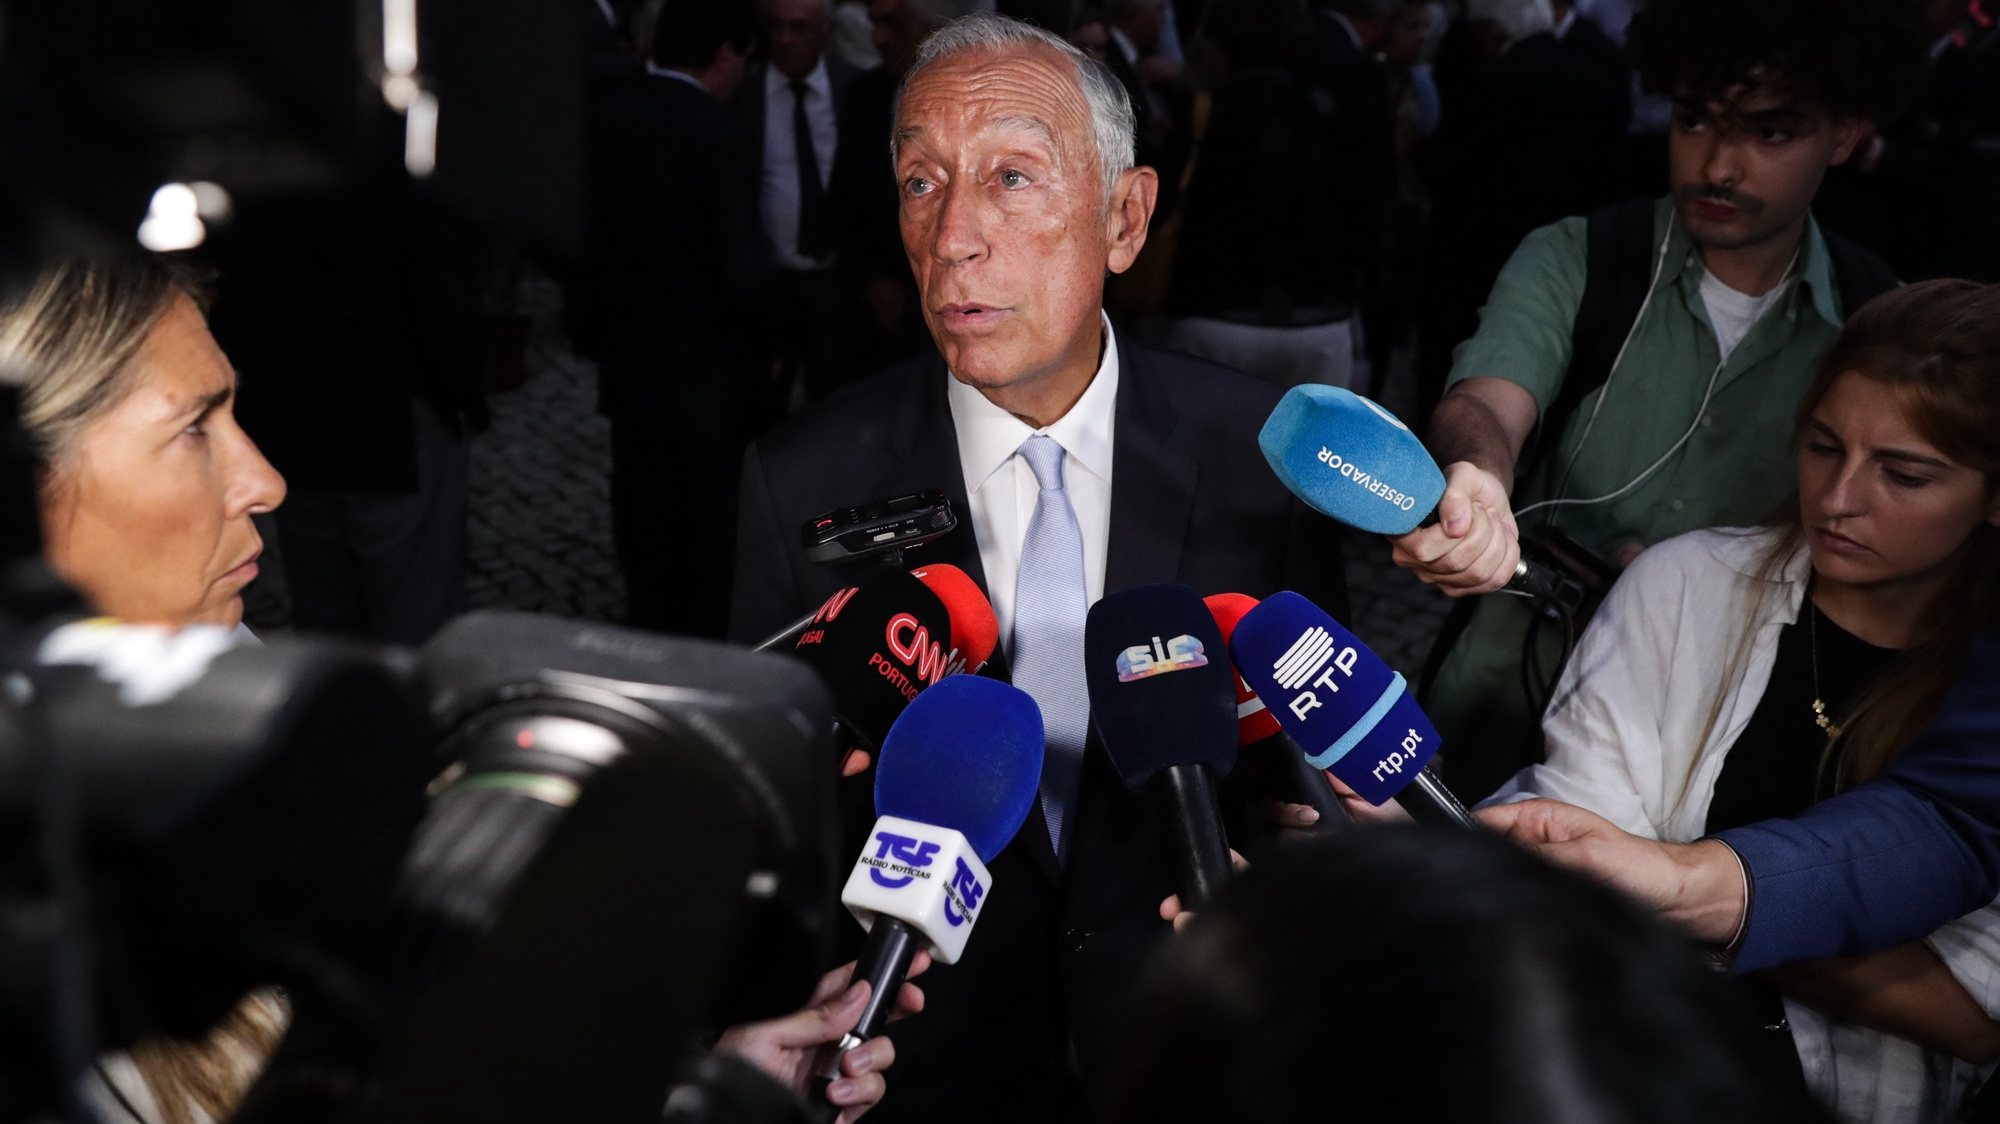 O Presidente da República, Marcelo Rebelo de Sousa, fala à imprensa após a sessão de apresentação do Livro “Memória Covid-19” em Lisboa, 04 de outubro de 2022. TIAGO PETINGA/LUSA